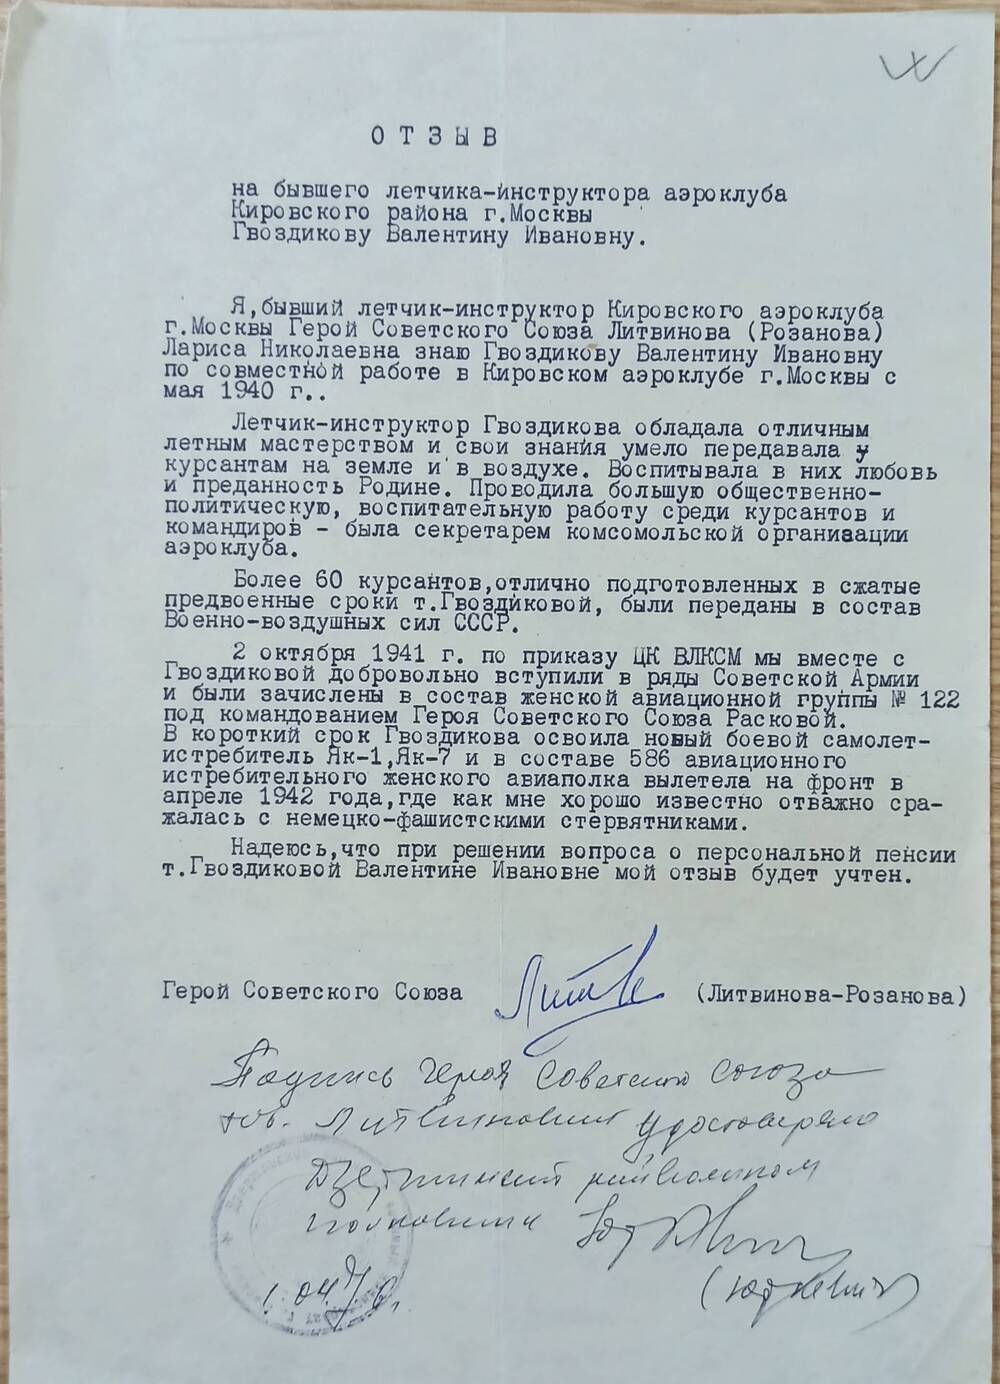 Отзыв на Гвоздикову В.И. Героя Советского Союза Литвинова-Розанова 1976 г.